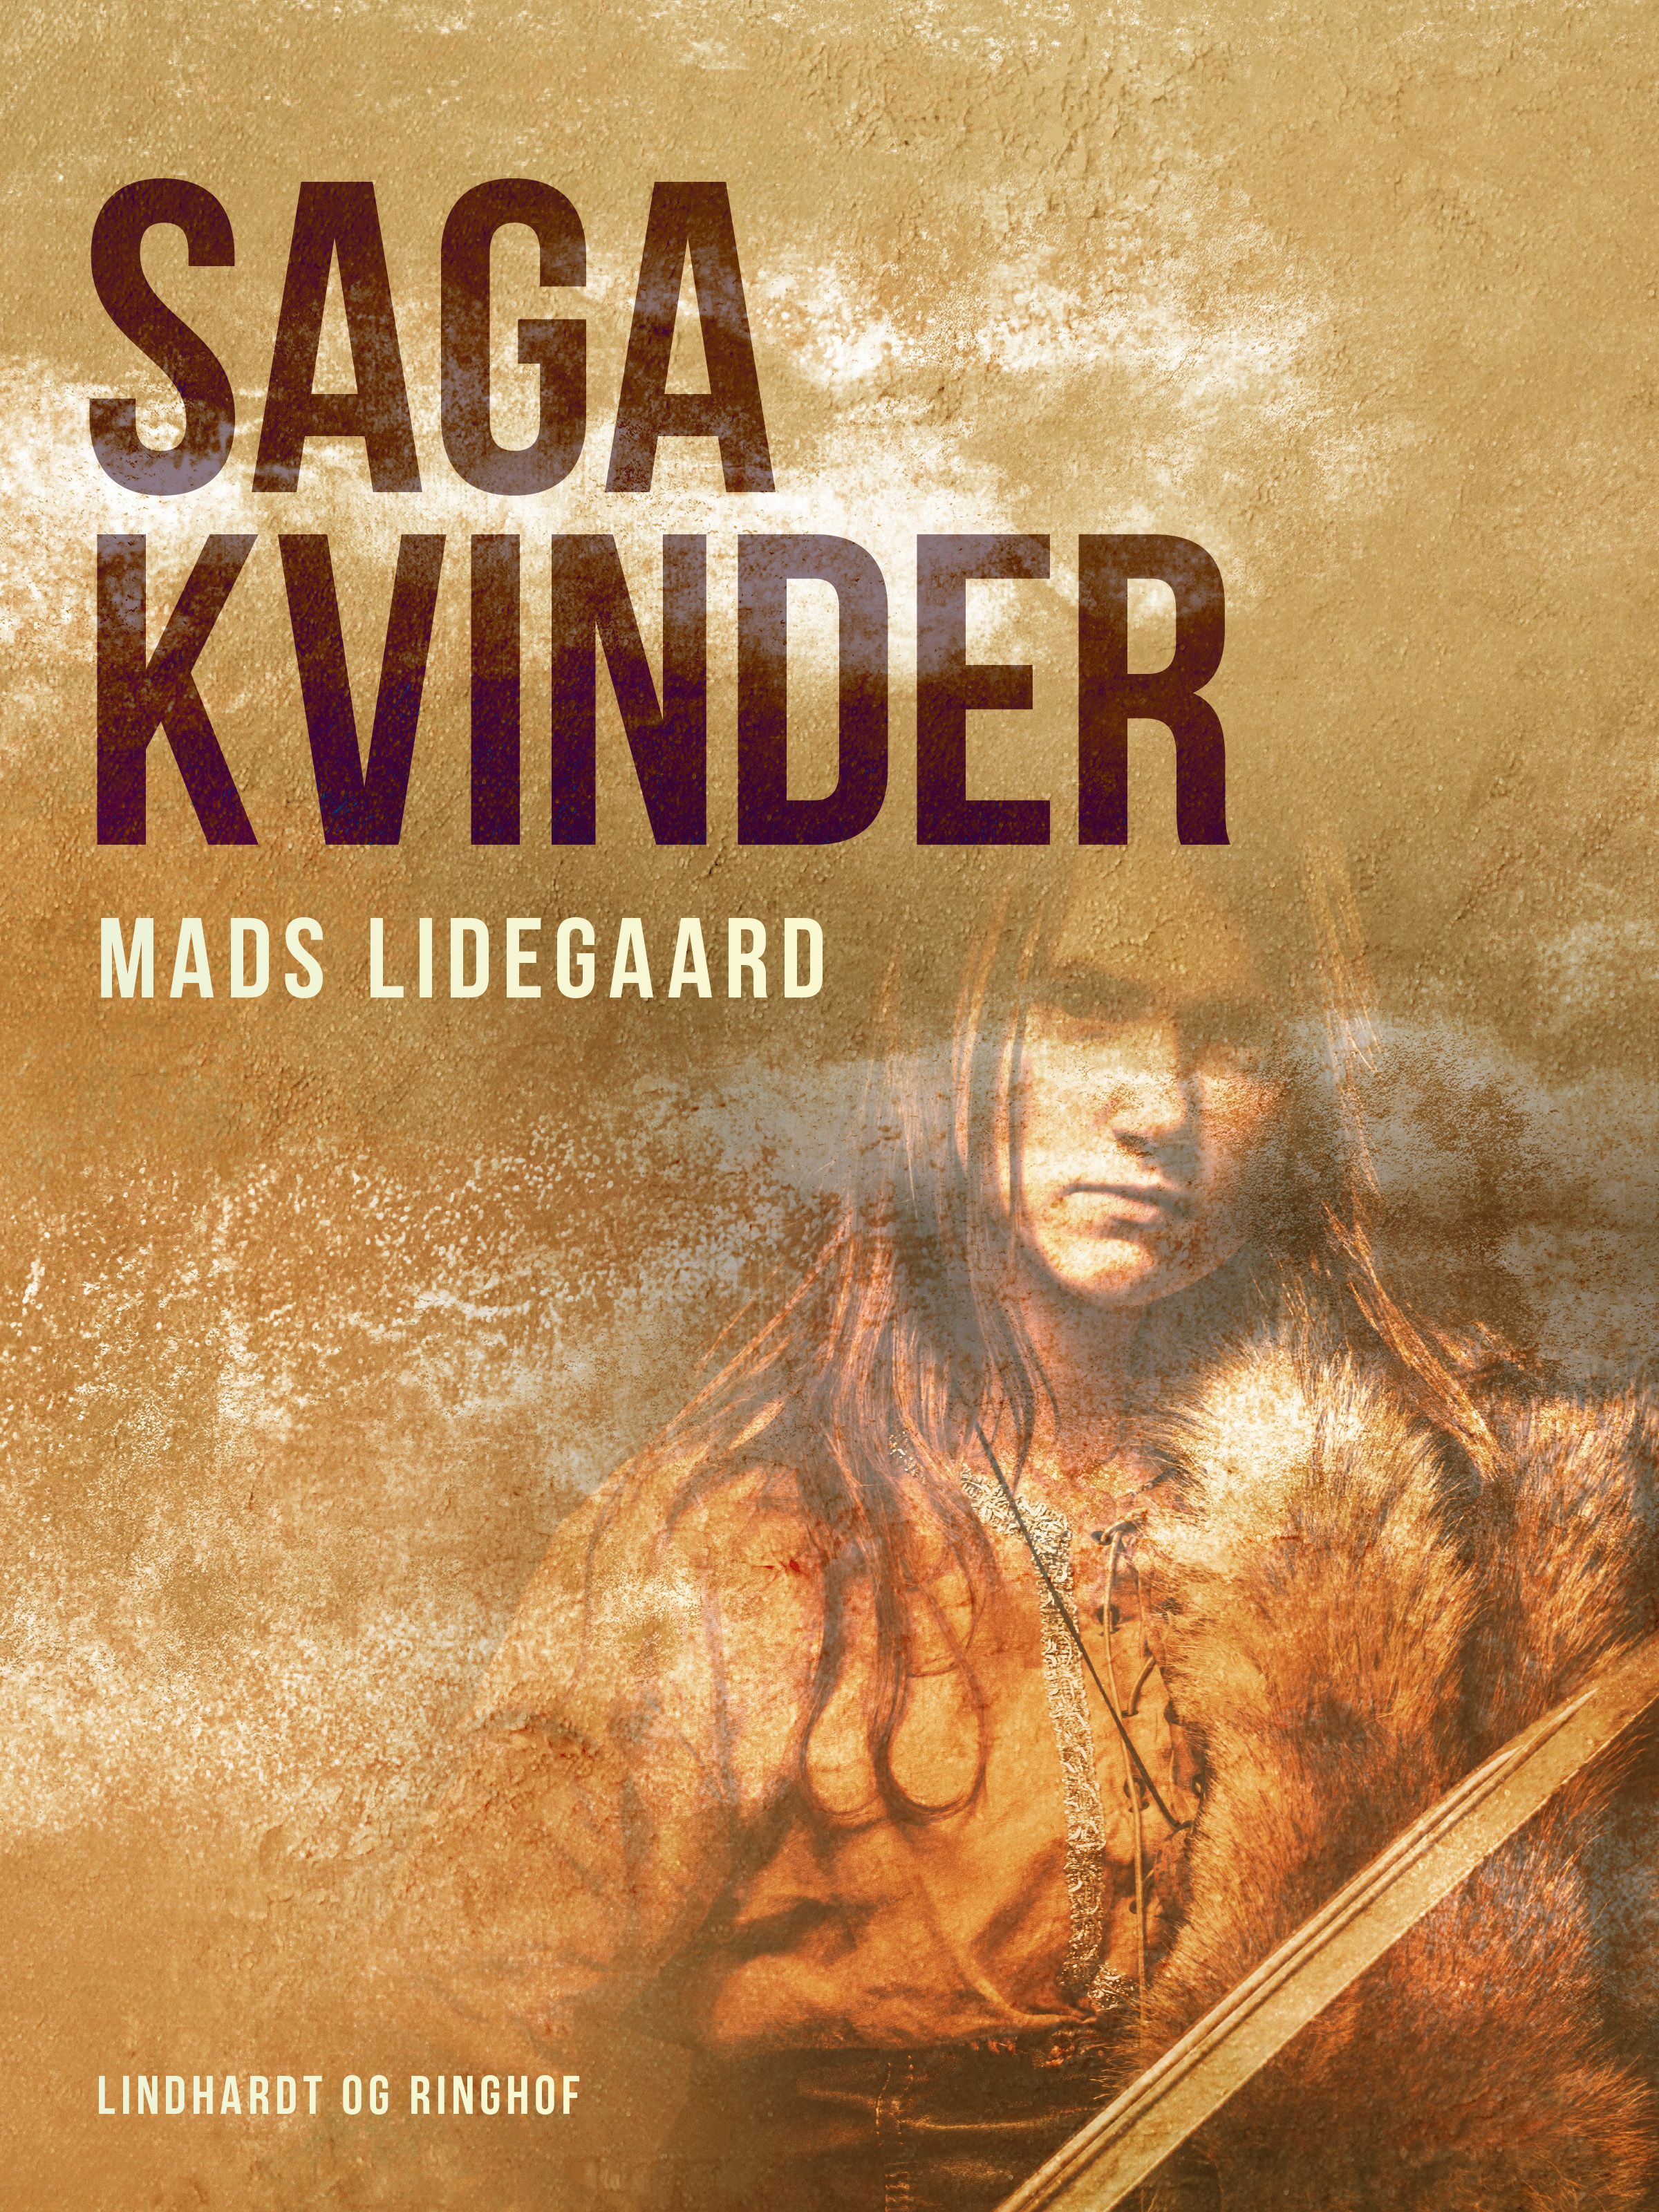 Sagakvinder, e-bok av Mads Lidegaard